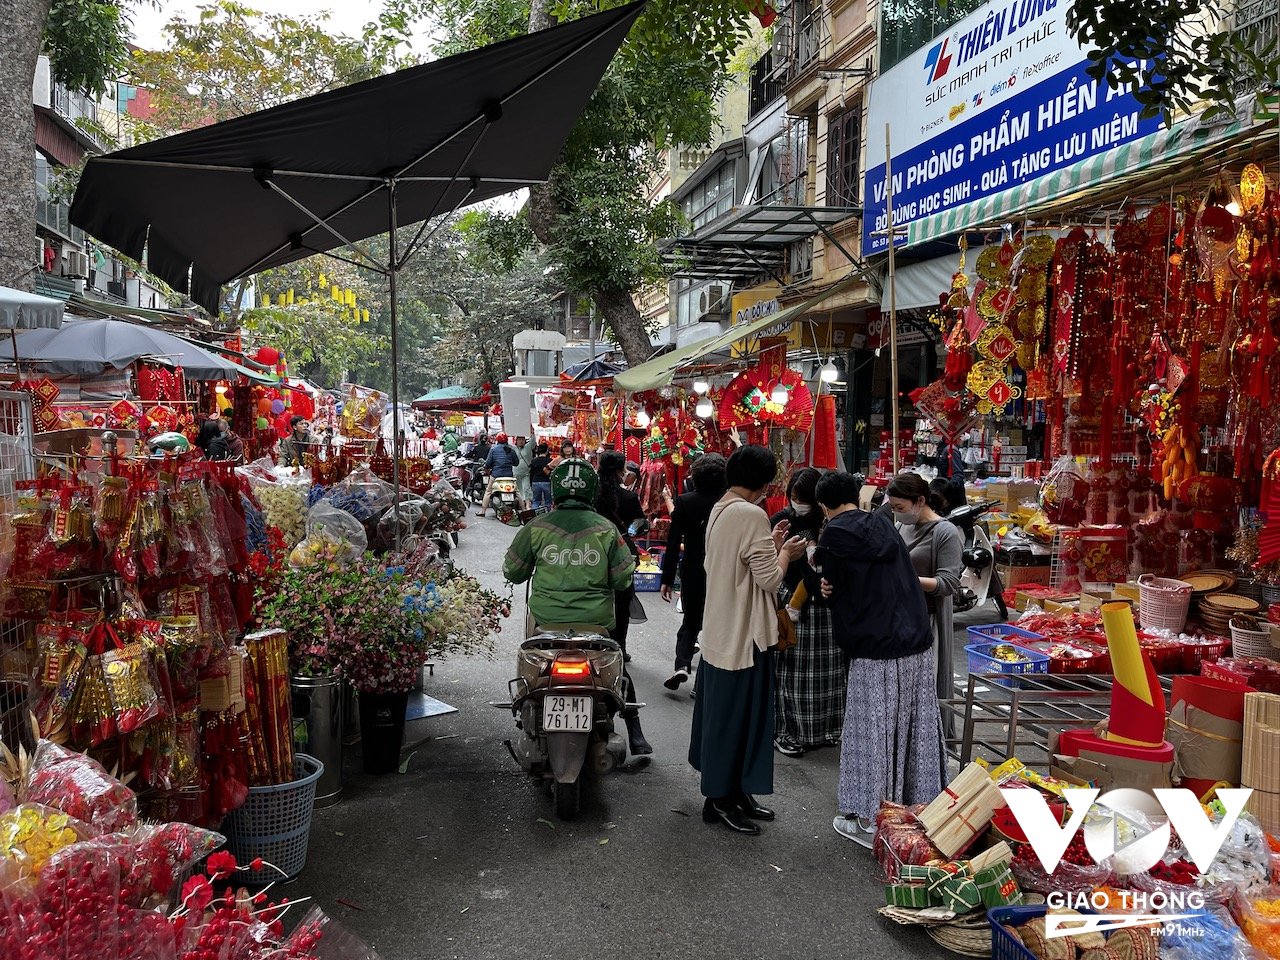 Số du khách nước ngoài đi qua chợ này thậm chí còn nhiều hơn người địa phương